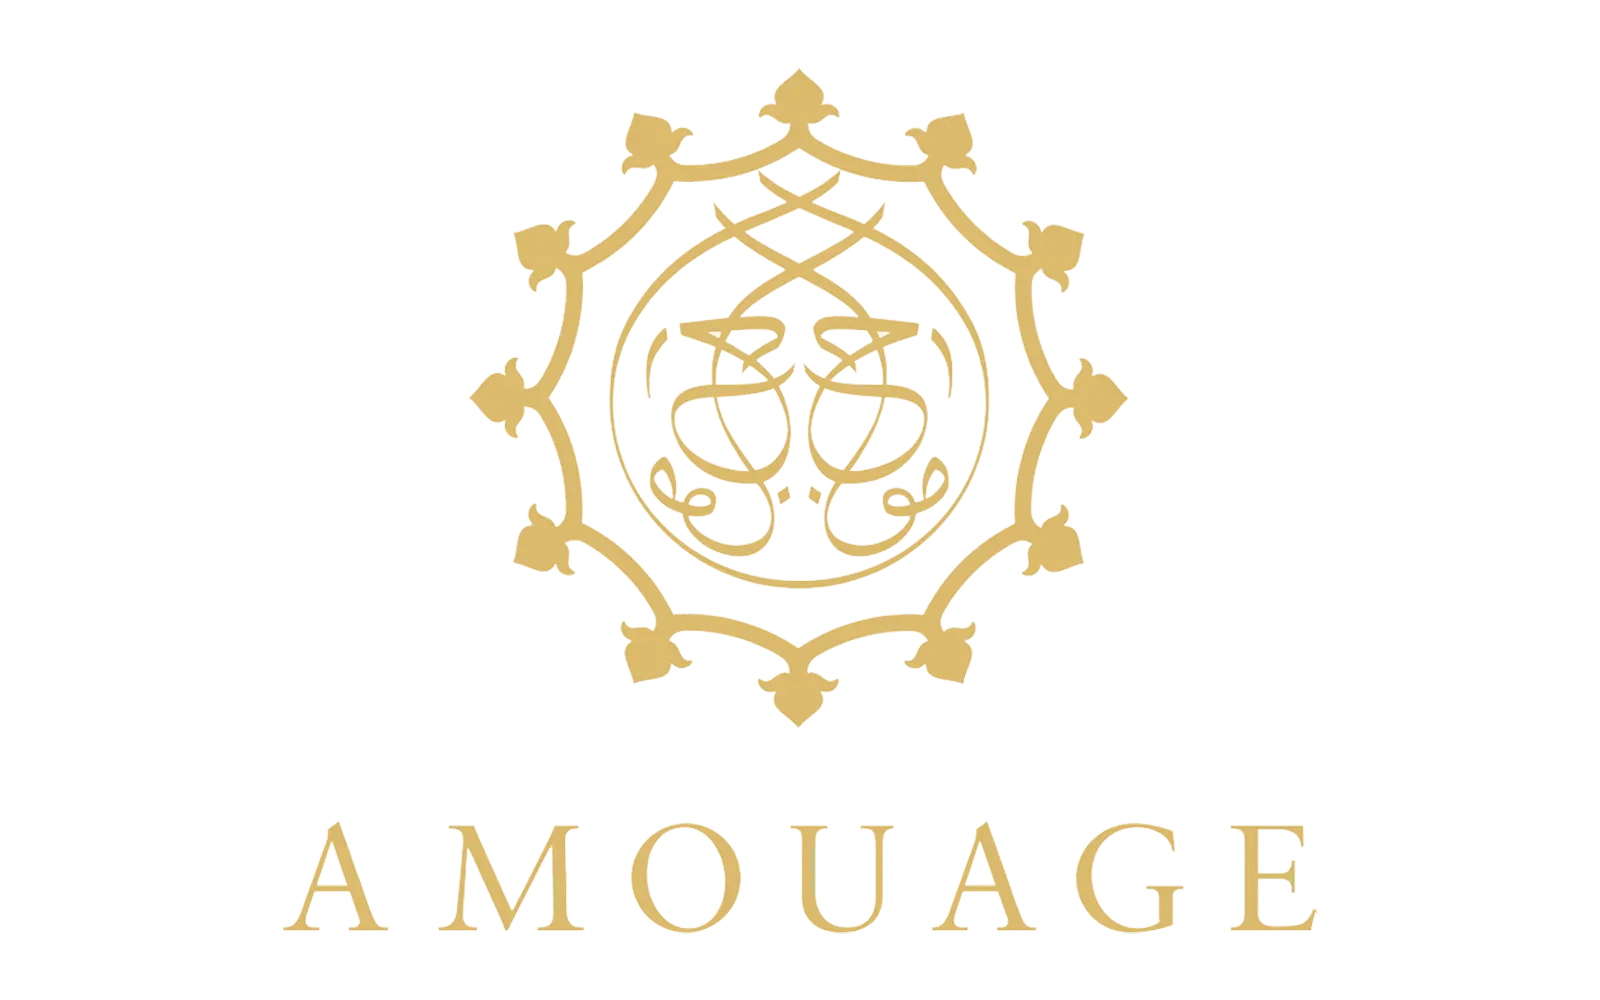 Amouage Logo